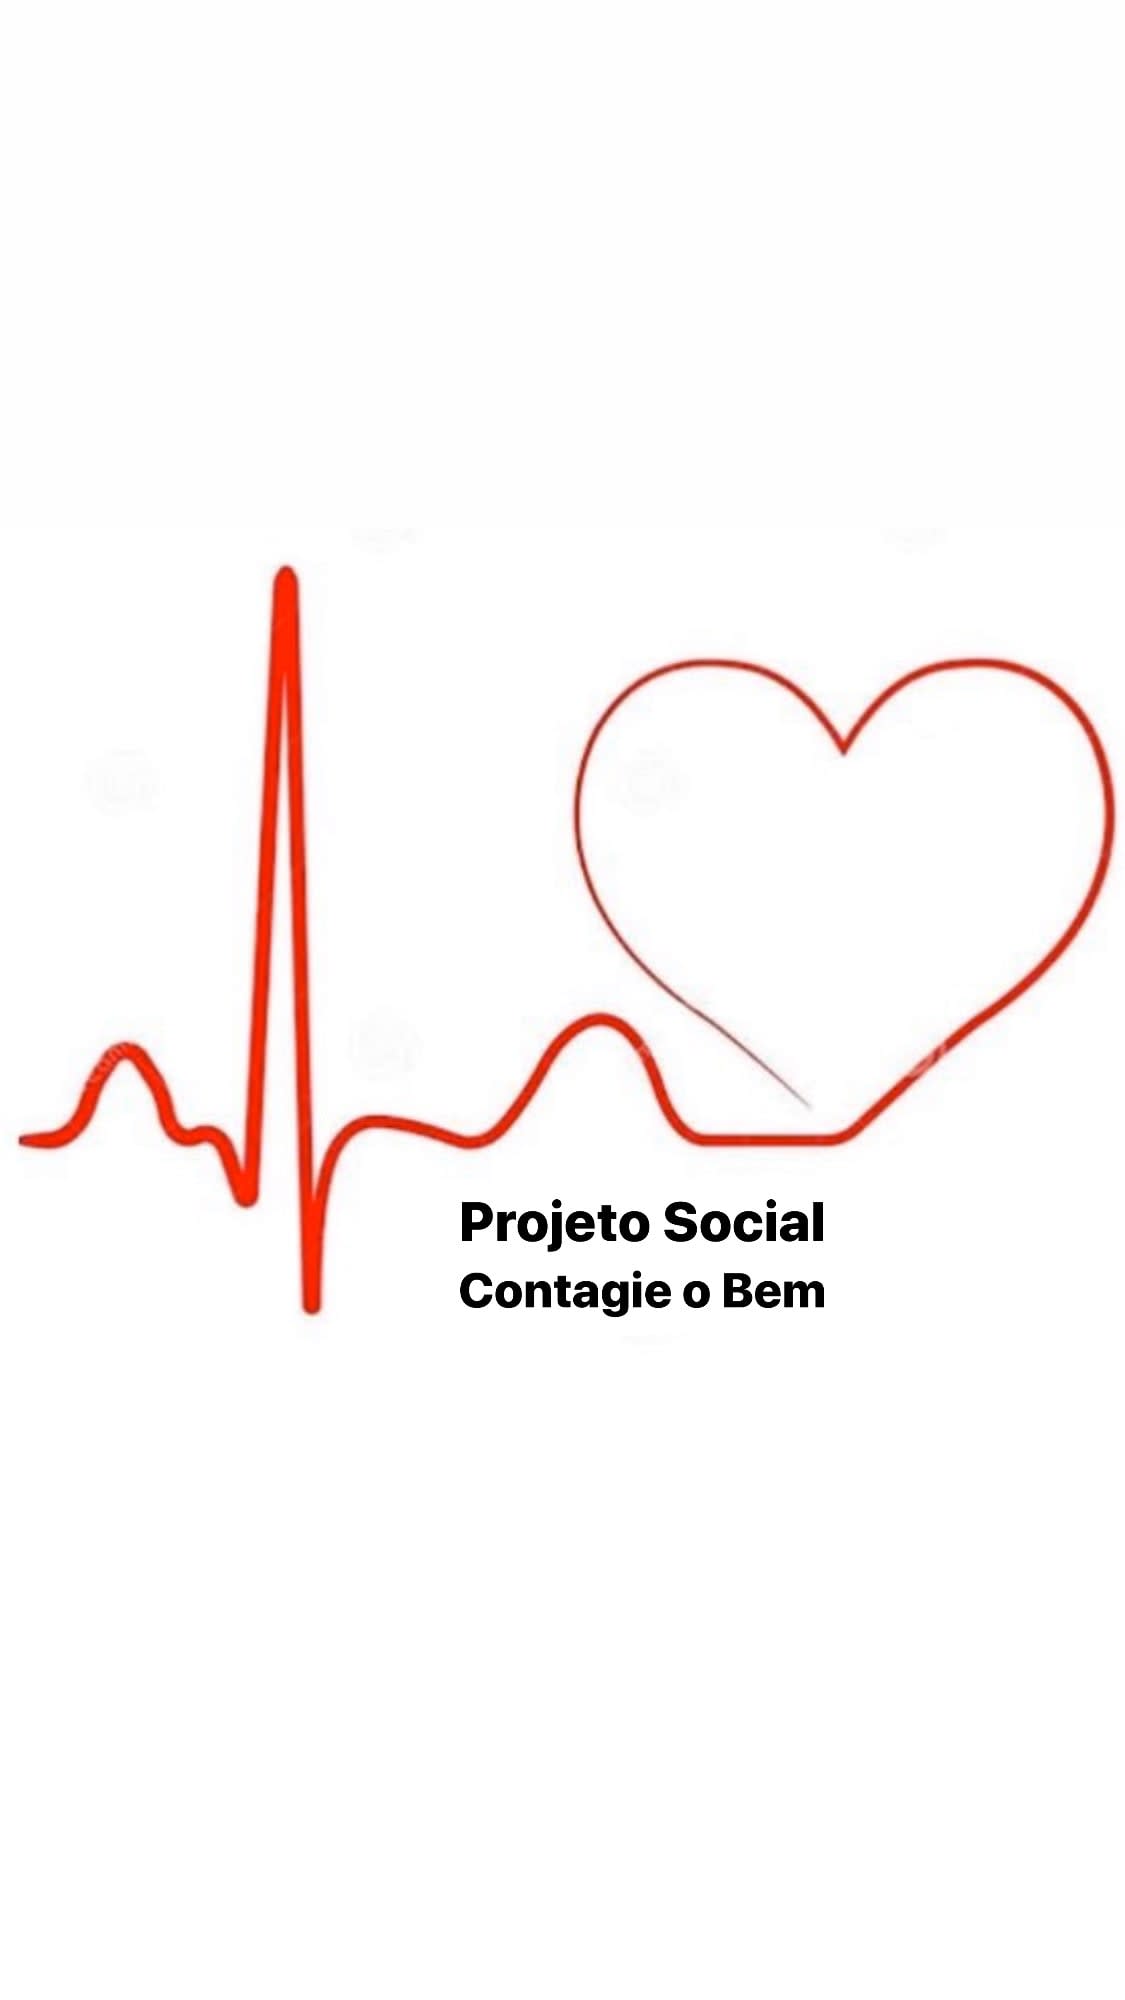 Projeto Social Contagie o Bem